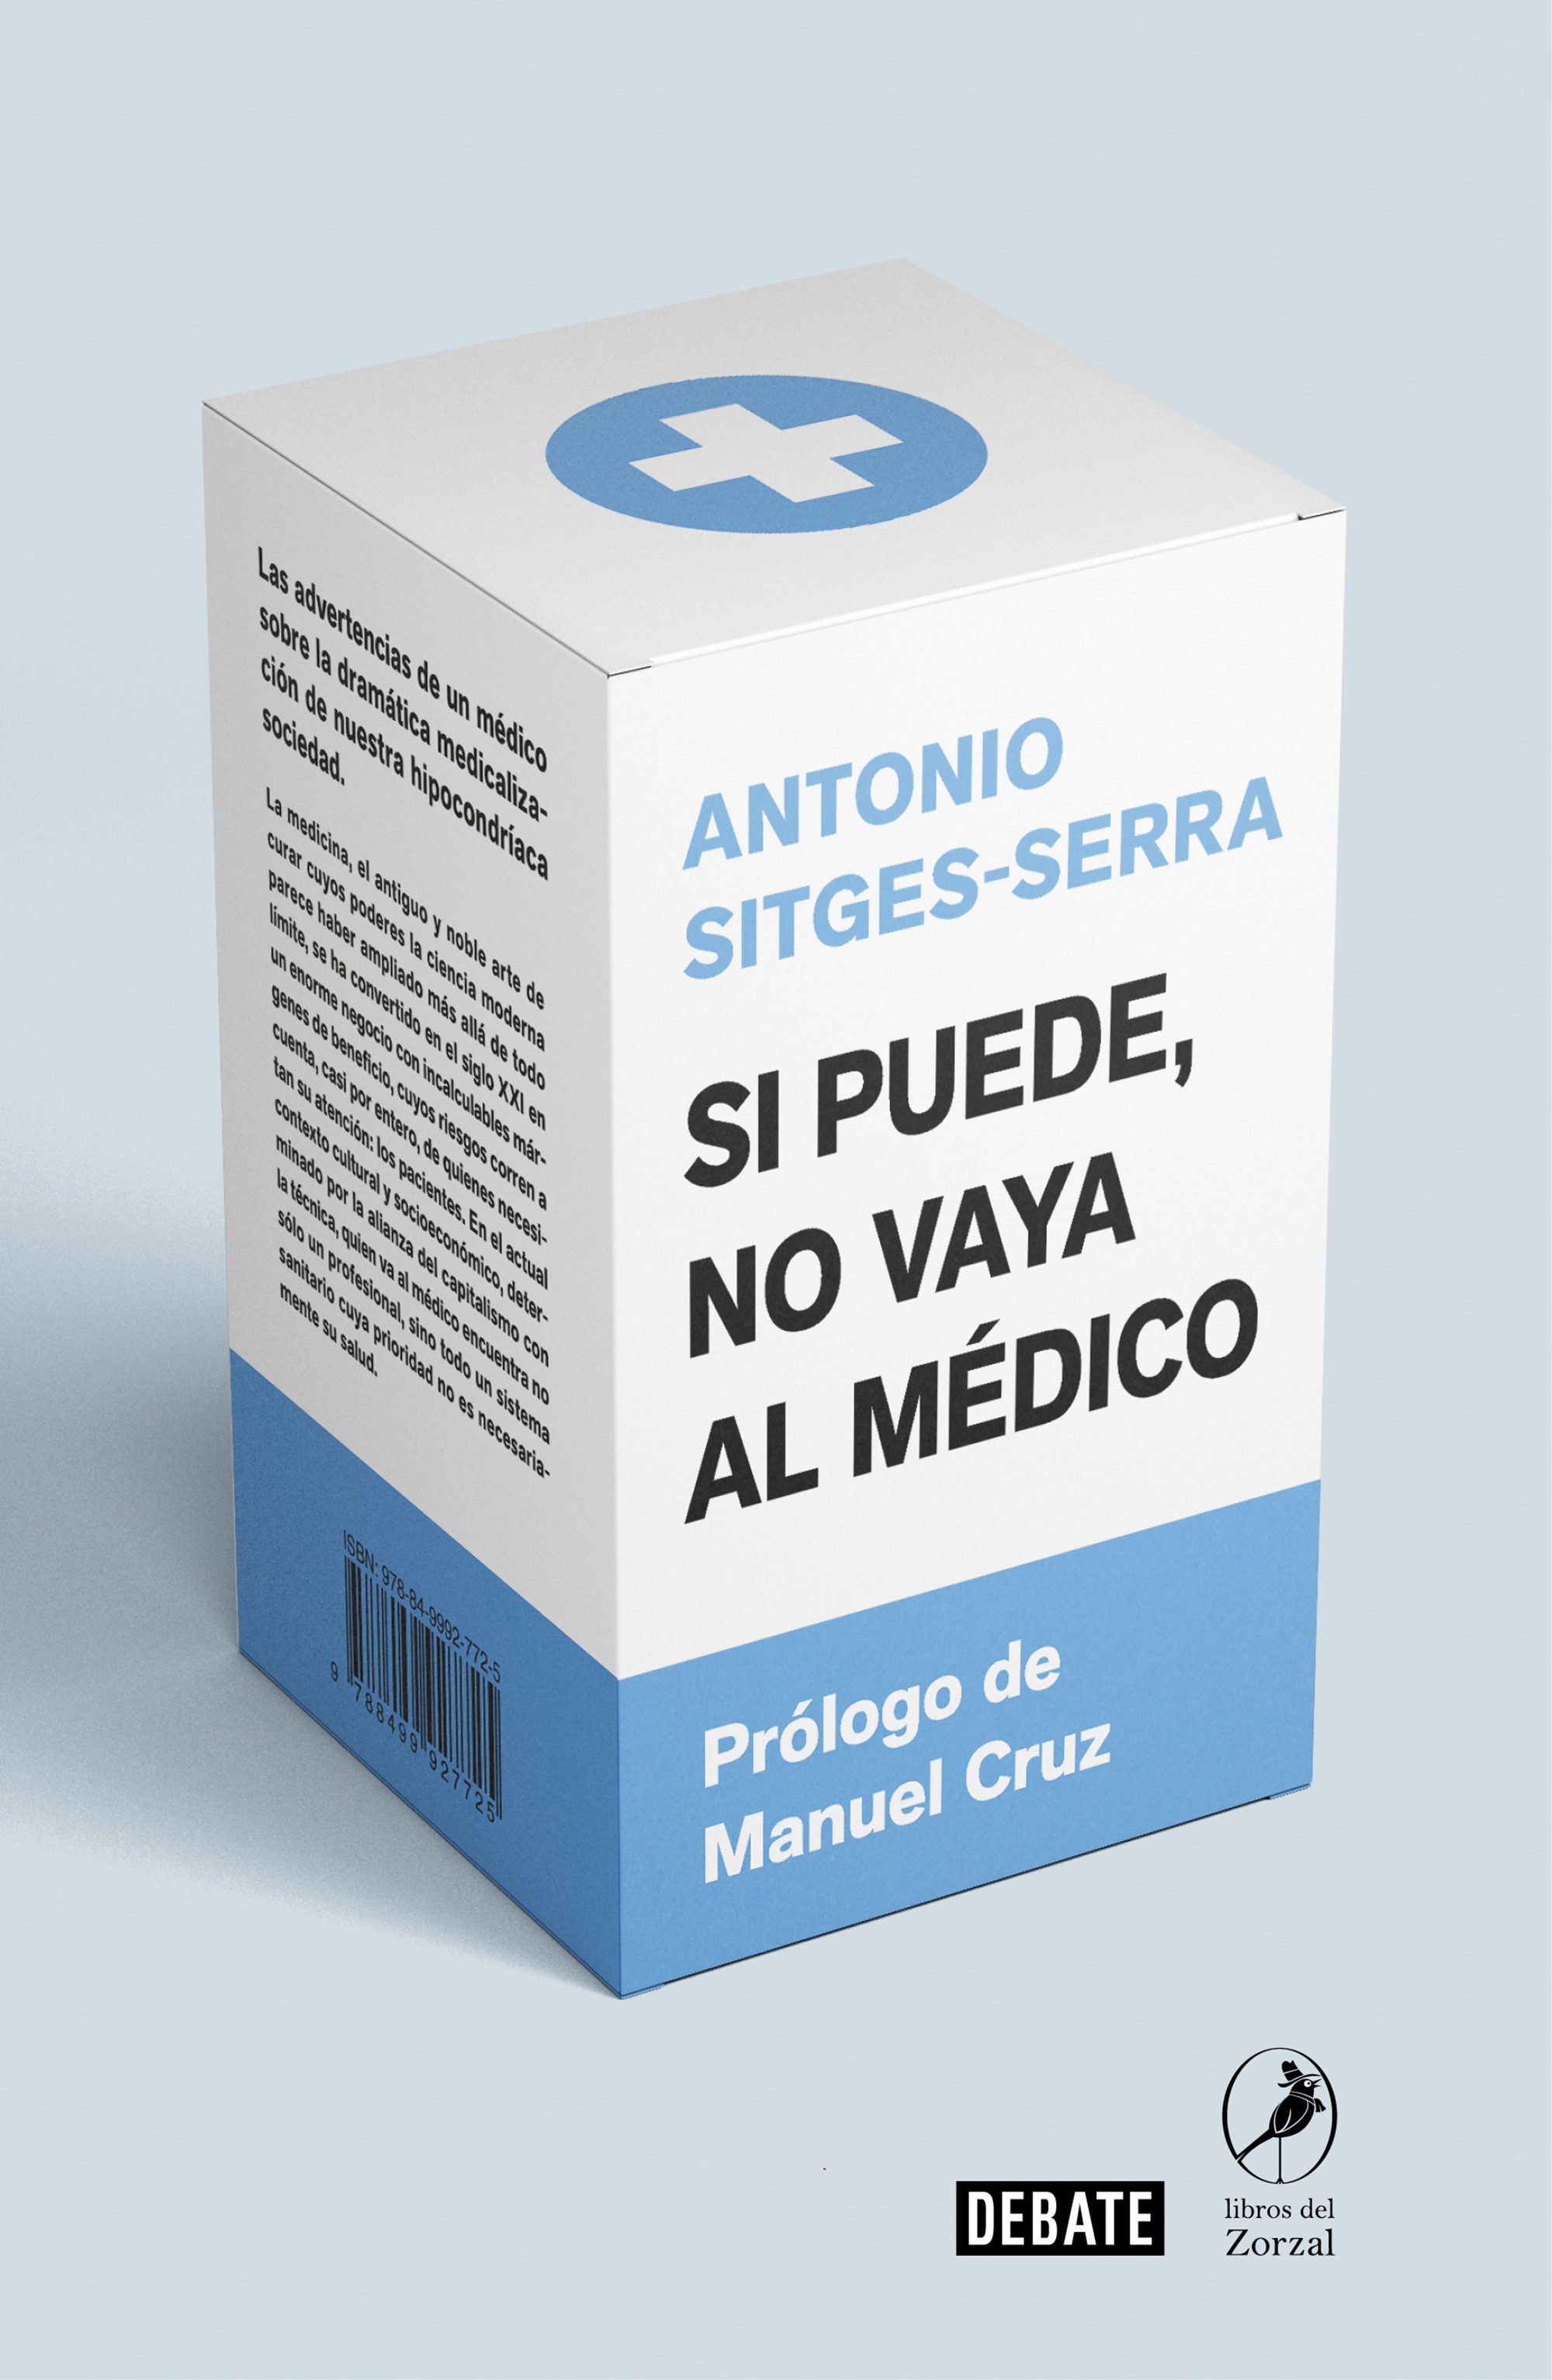 Antonio Sitges Serra, 'Si puede, no vaya al médico'. Debate   Los Libros del Zorzal, 318 p., 18,90 €.